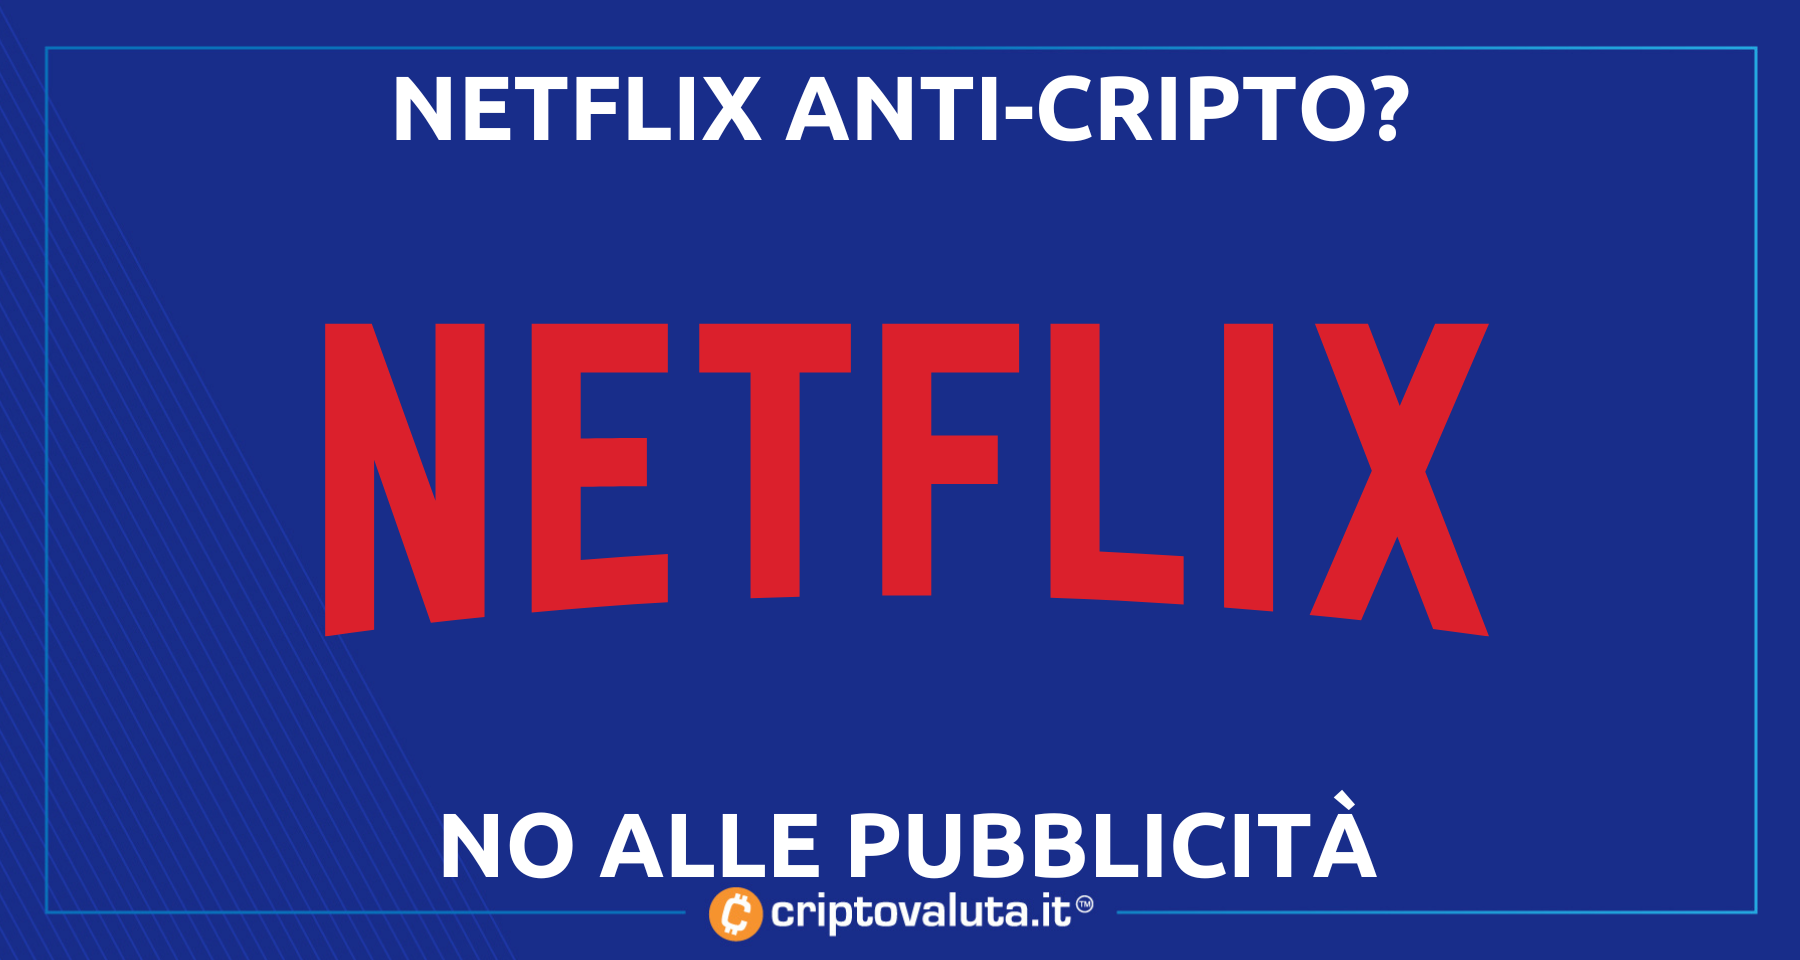 Netflix: NO alla pubblicità crypto! | Ma il leader dello streaming potrebbe…